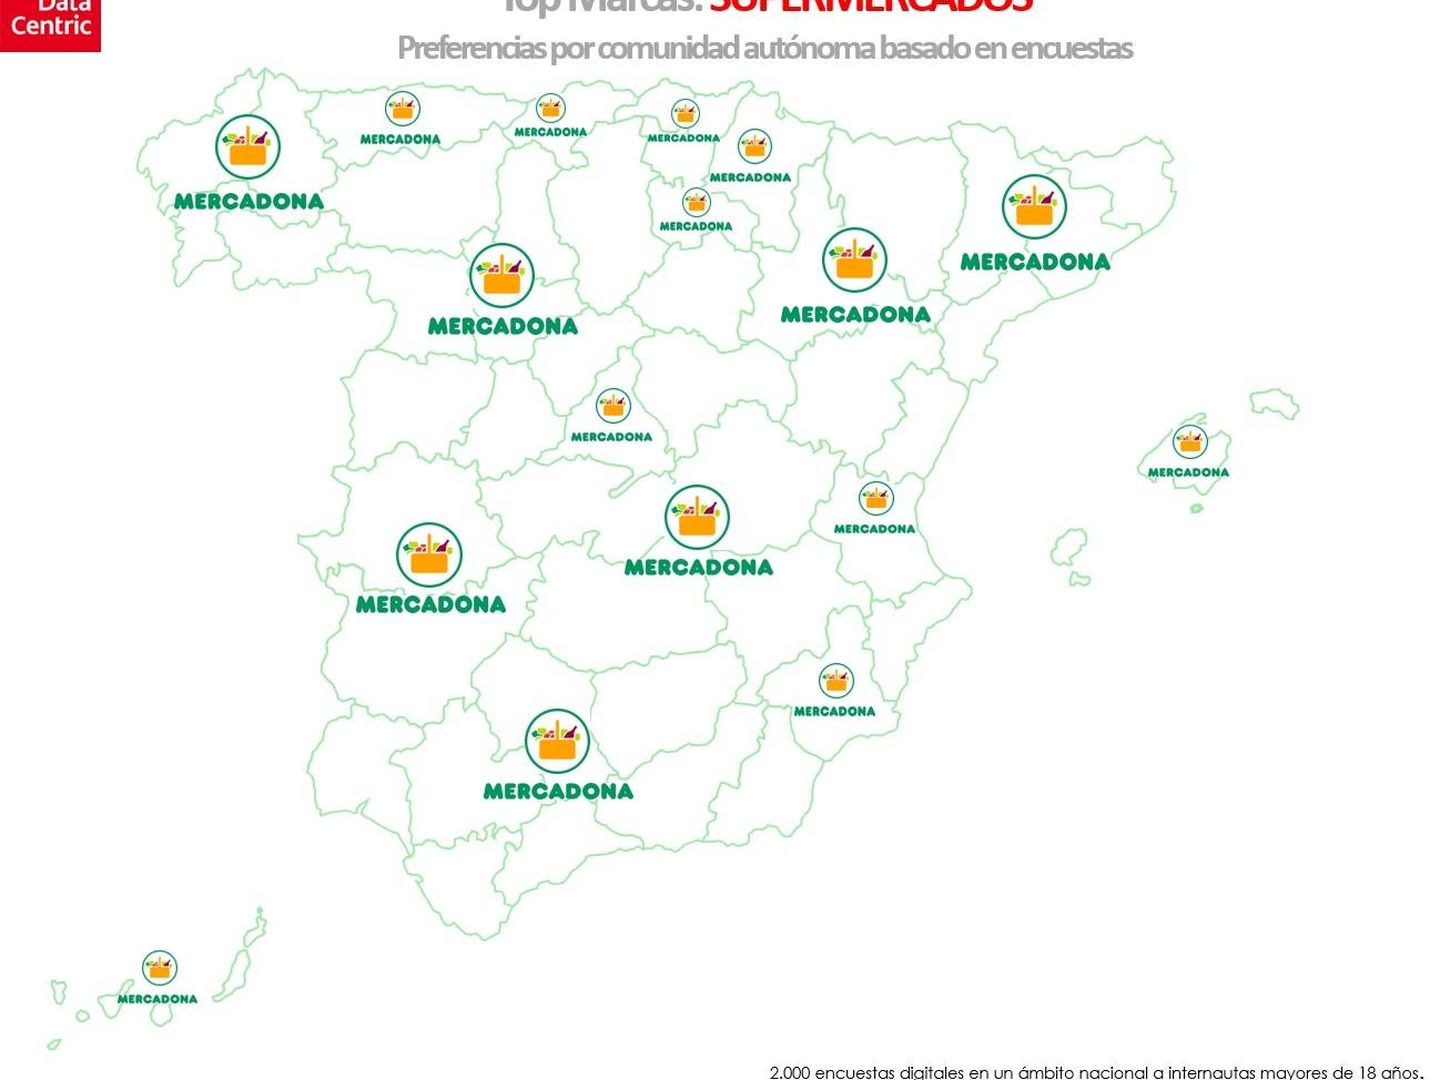 Mapa de supermercados (Datacentric)